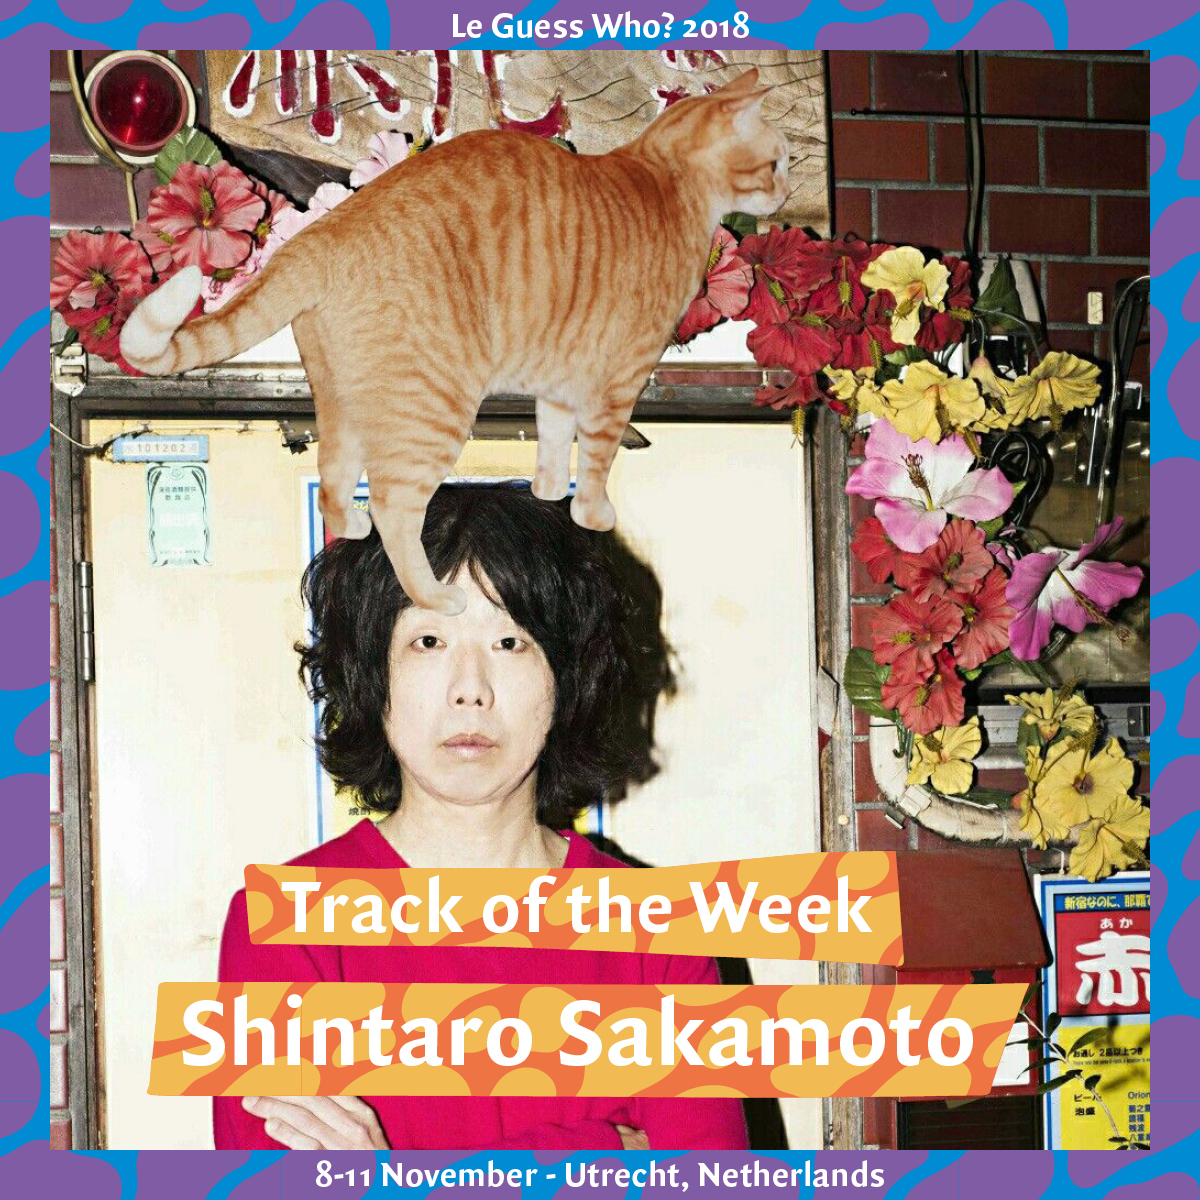 Track of the Week #13: Shintaro Sakamoto - 'Let's Dance Raw'